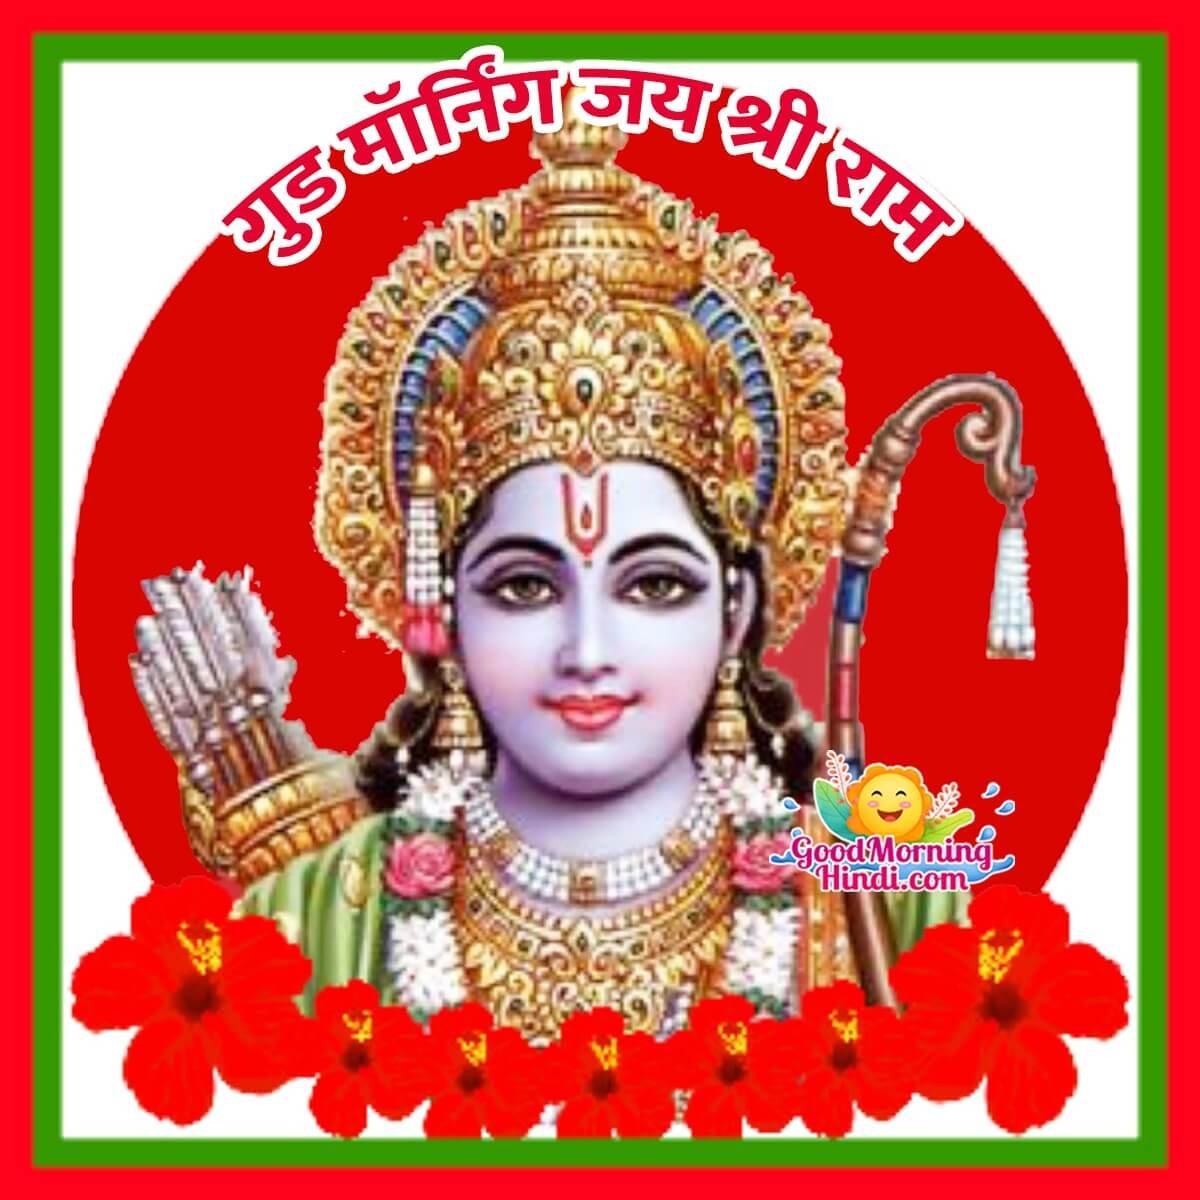 Good Morning Jai Shri Ram Image